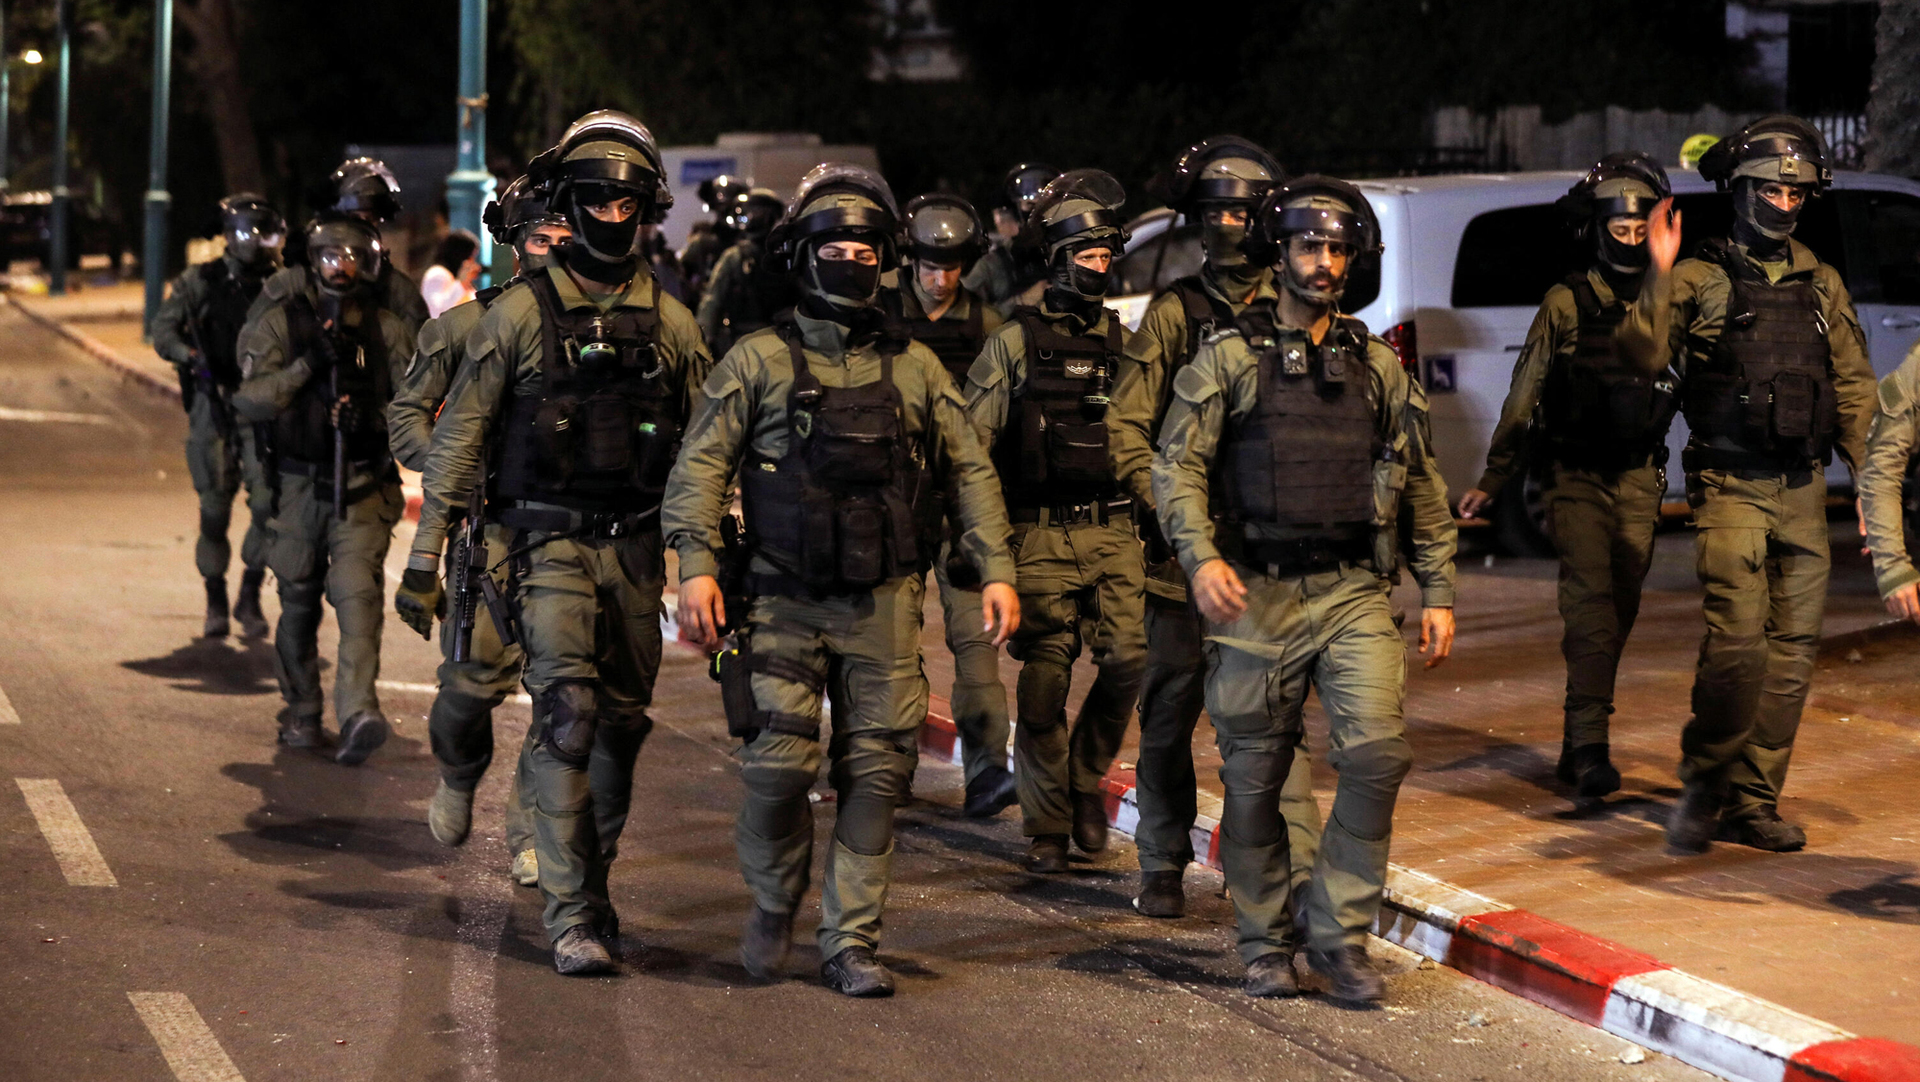 כוחות משטרה מג"ב לוד מהומות ערבים